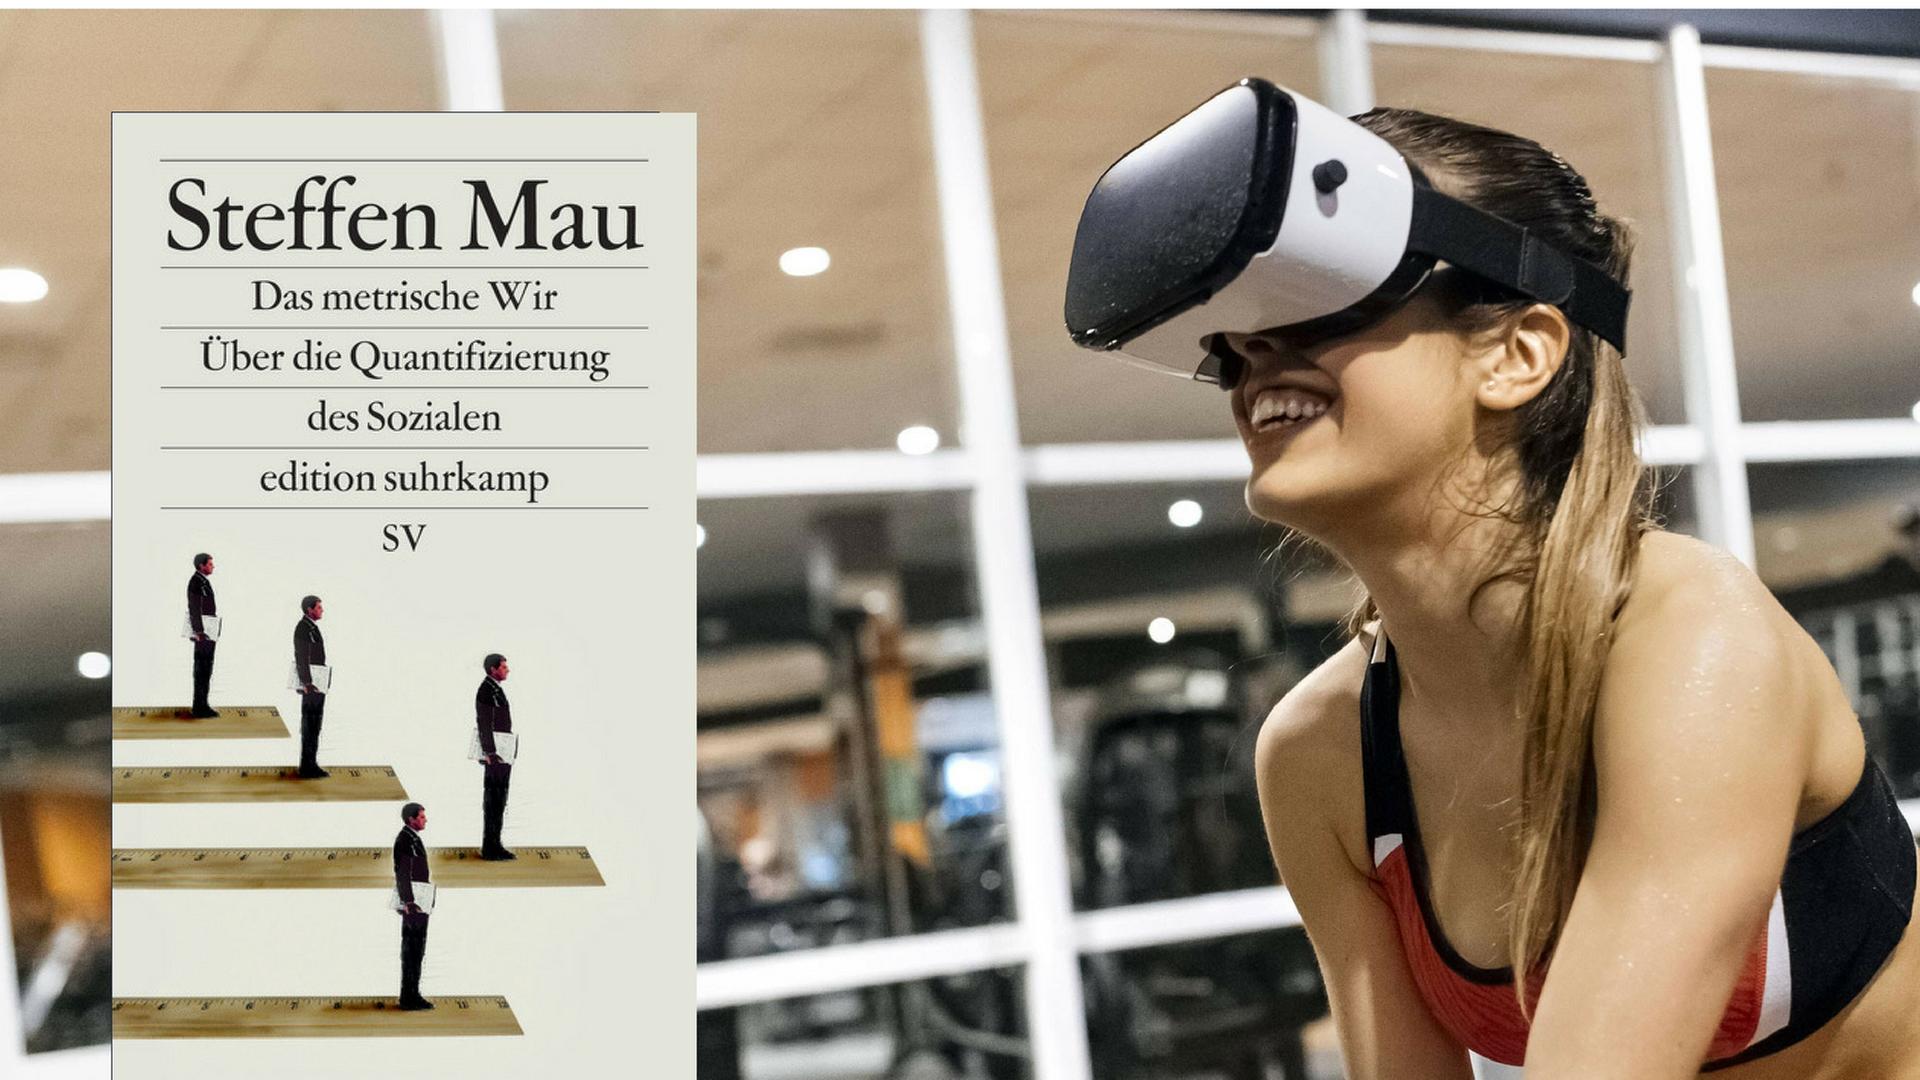 Cover von Steffen Maus Buch "Das Metrische Wir. Über die Quantifizierung des Sozialen". Im Hintergrund ist eine Frau in einem Fitnesstudio zu sehen, die eine VR-Brille trägt.